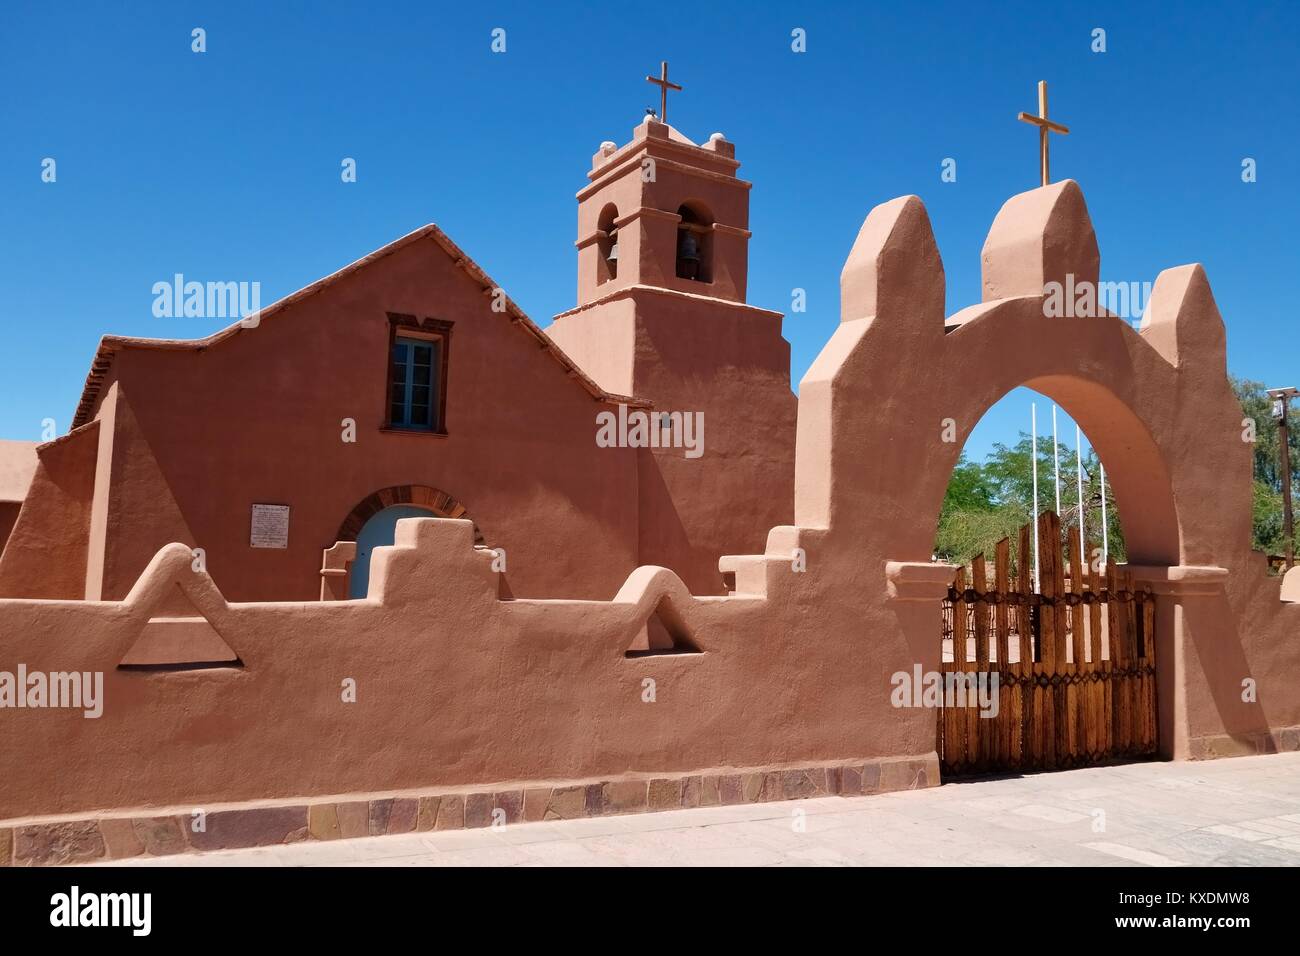 Church in Adobe style, San Pedro de Atacama, El Loa, Antofagasta, Chile Stock Photo